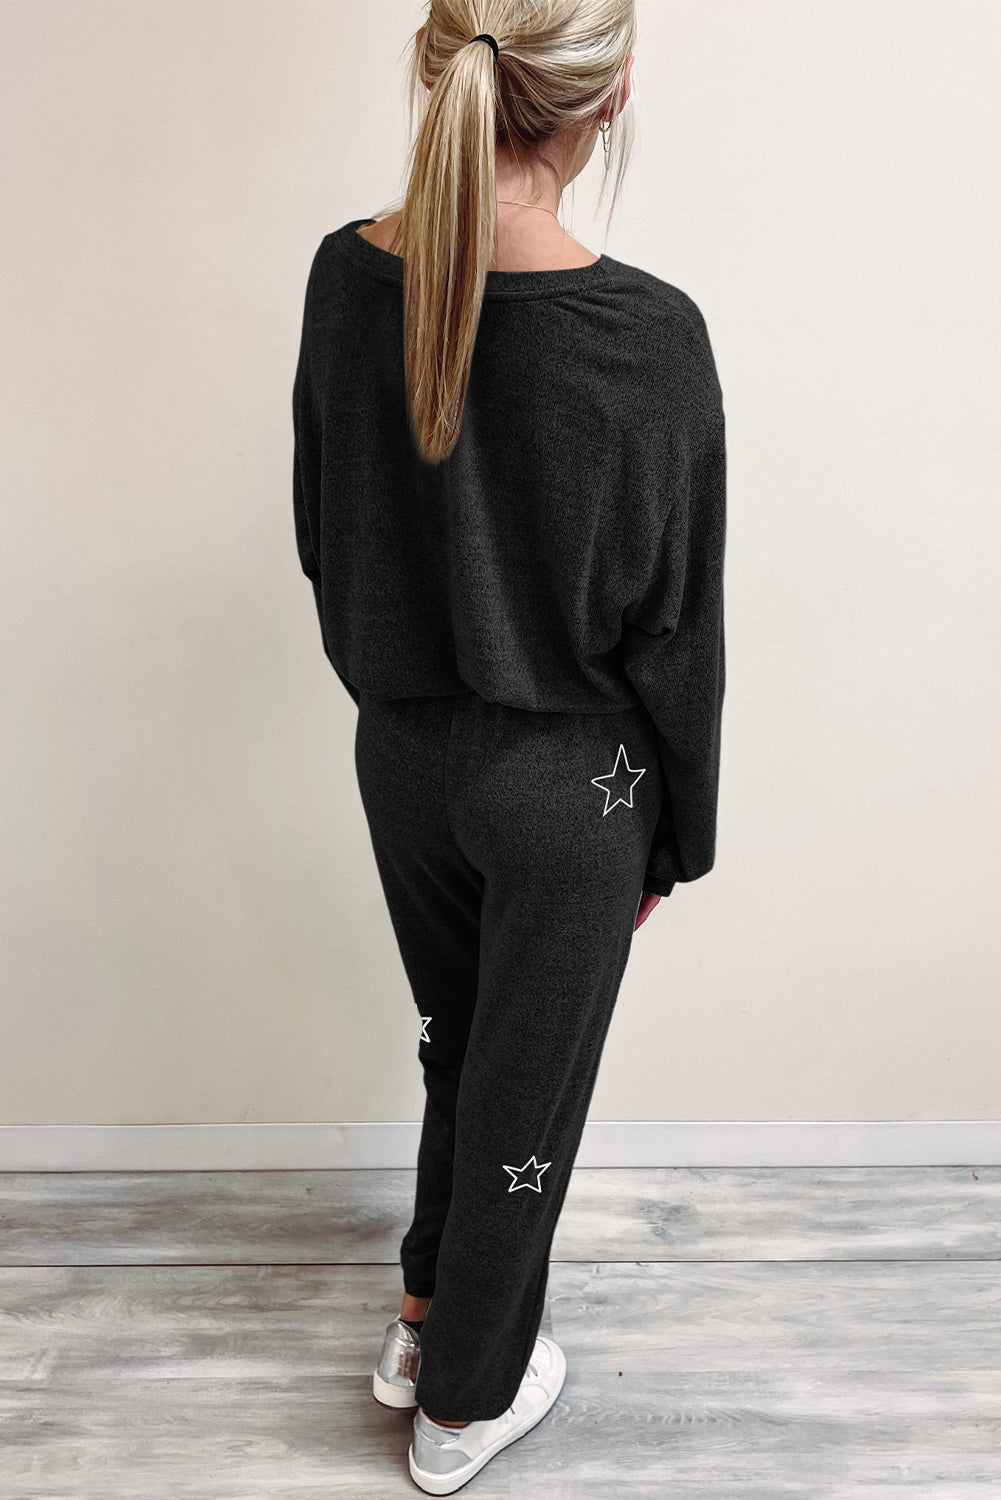 Gray Stars Print Long Sleeve Top and Drawstring Pants Set